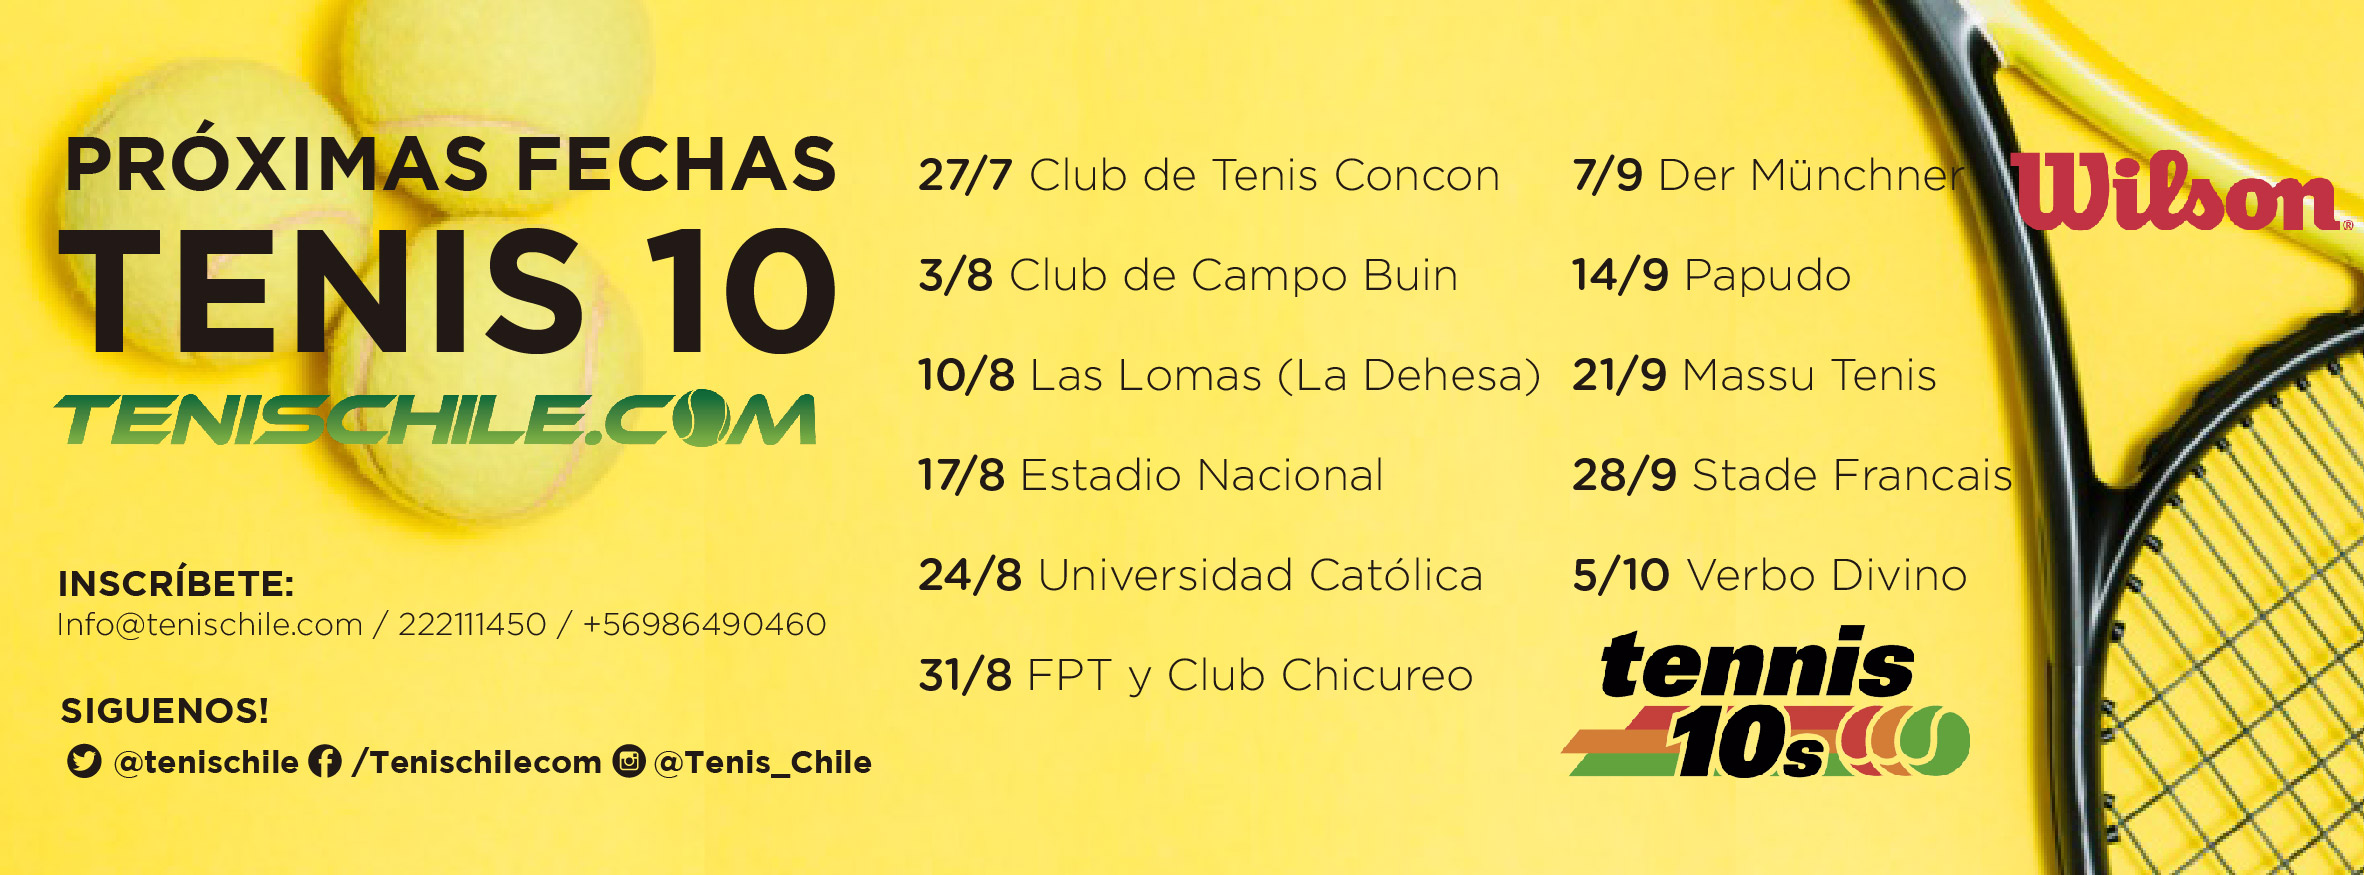 Concón fue sede de una nueva fecha del tenis 10-12-14